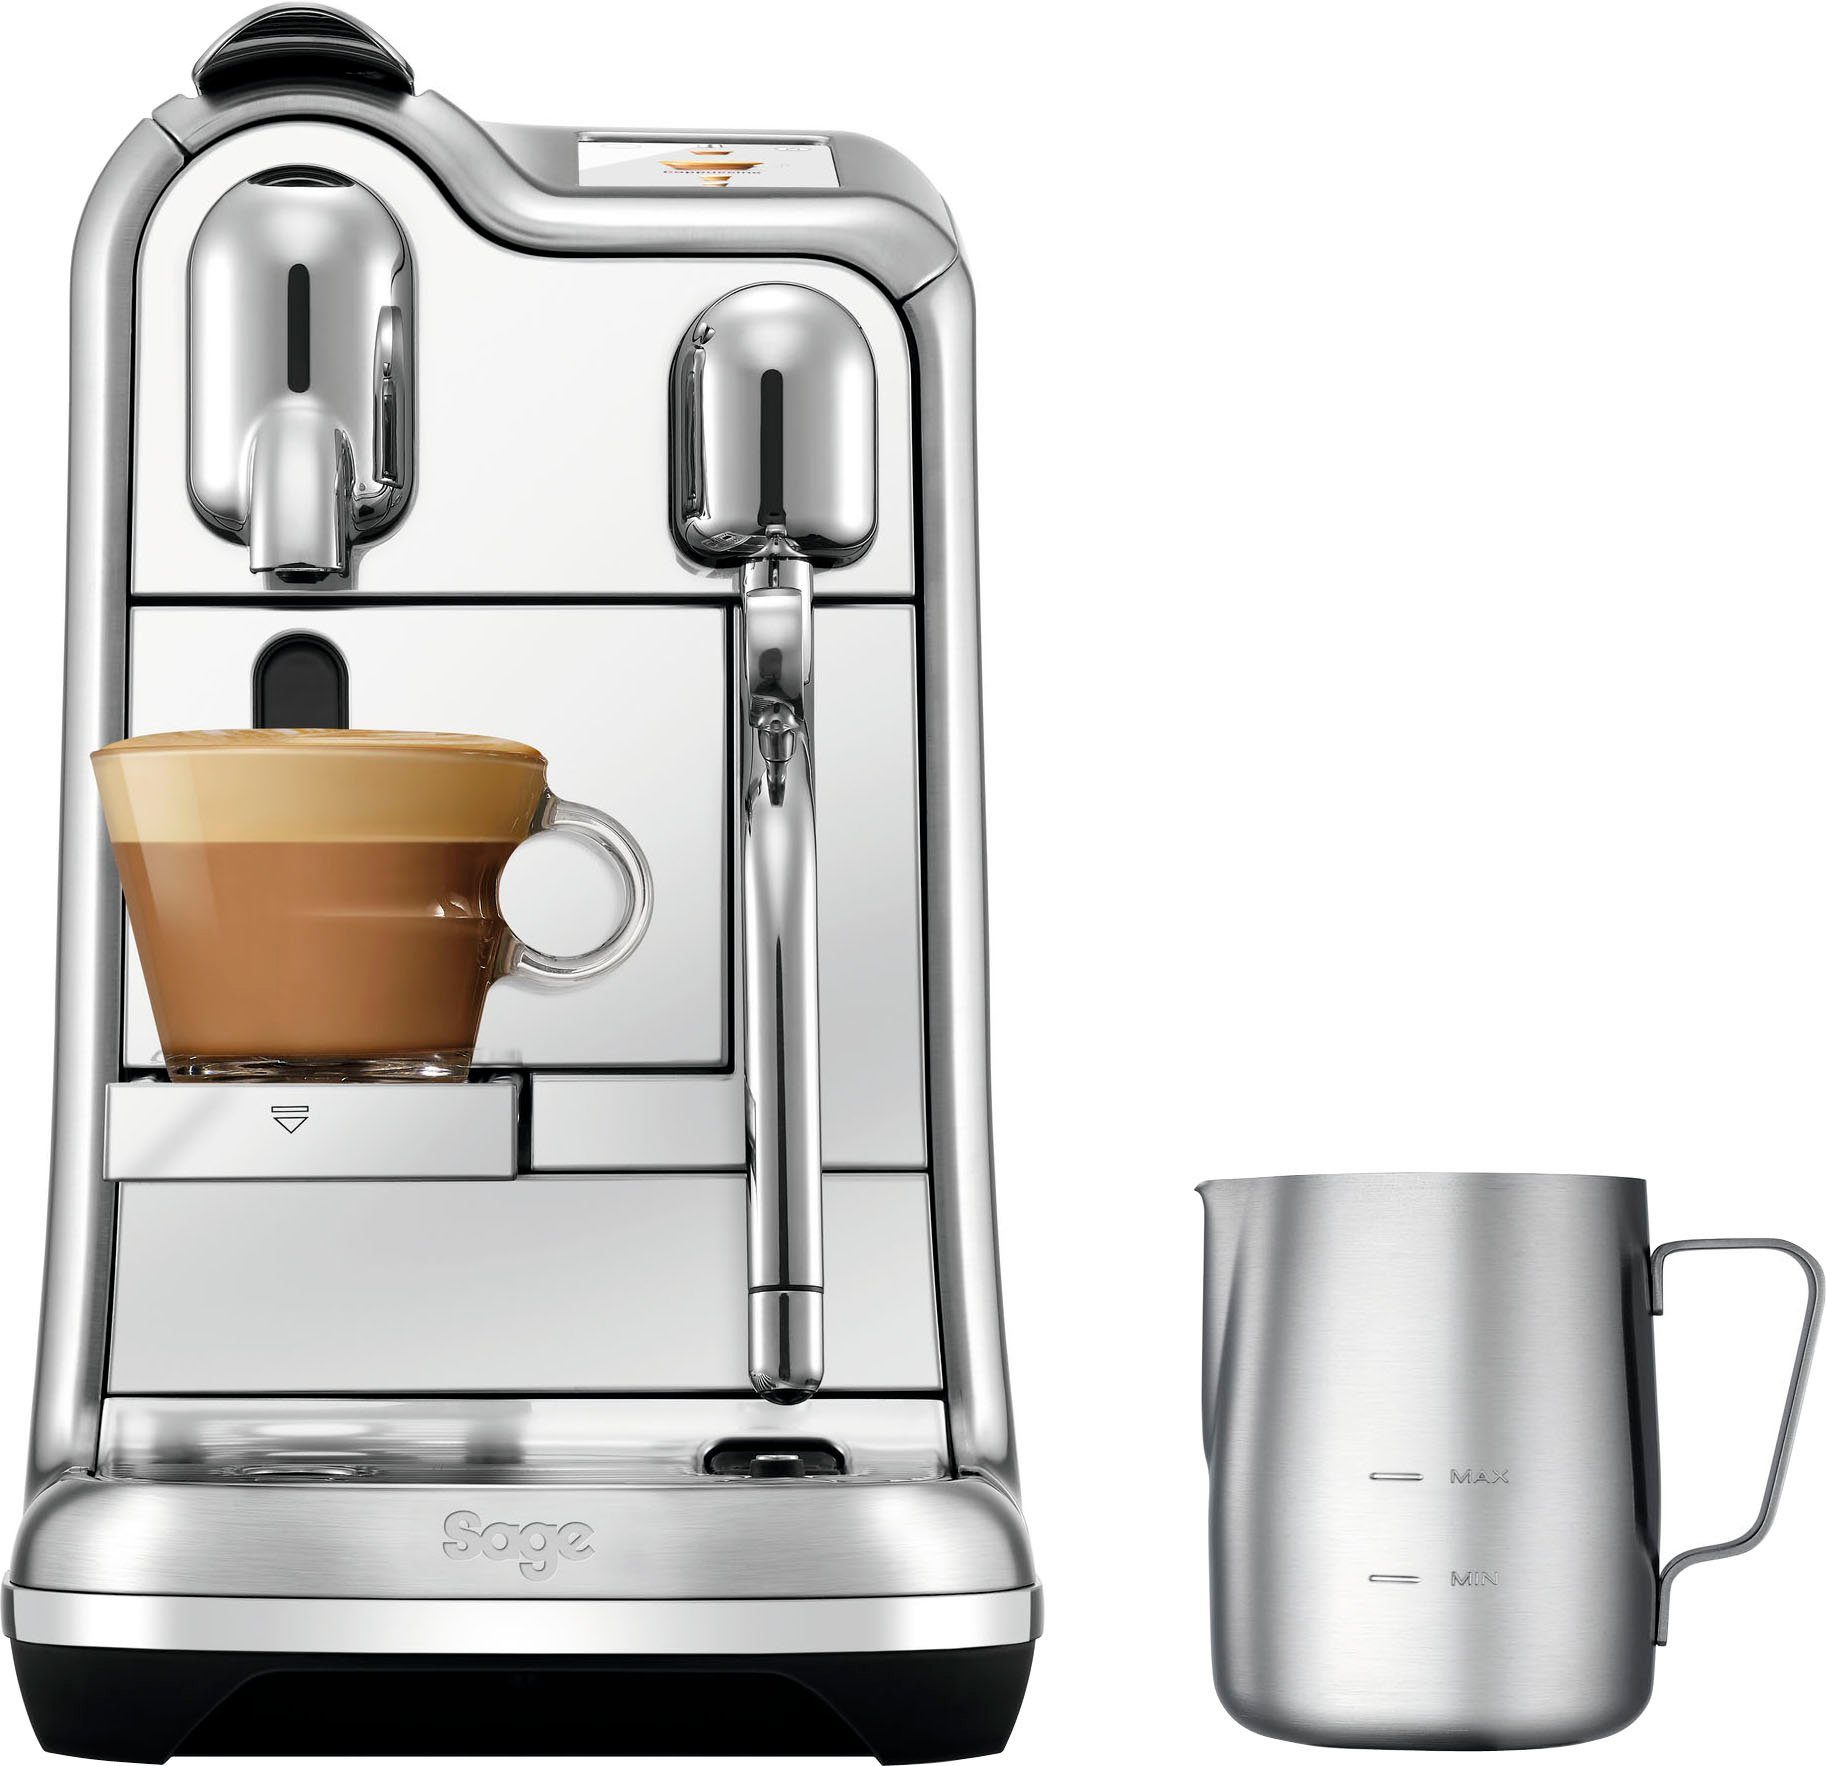 SNE900 Creatista mit Nespresso Kapseln inkl. Willkommenspaket Kapselmaschine Pro mit 14 Edelstahl-Milchkanne,